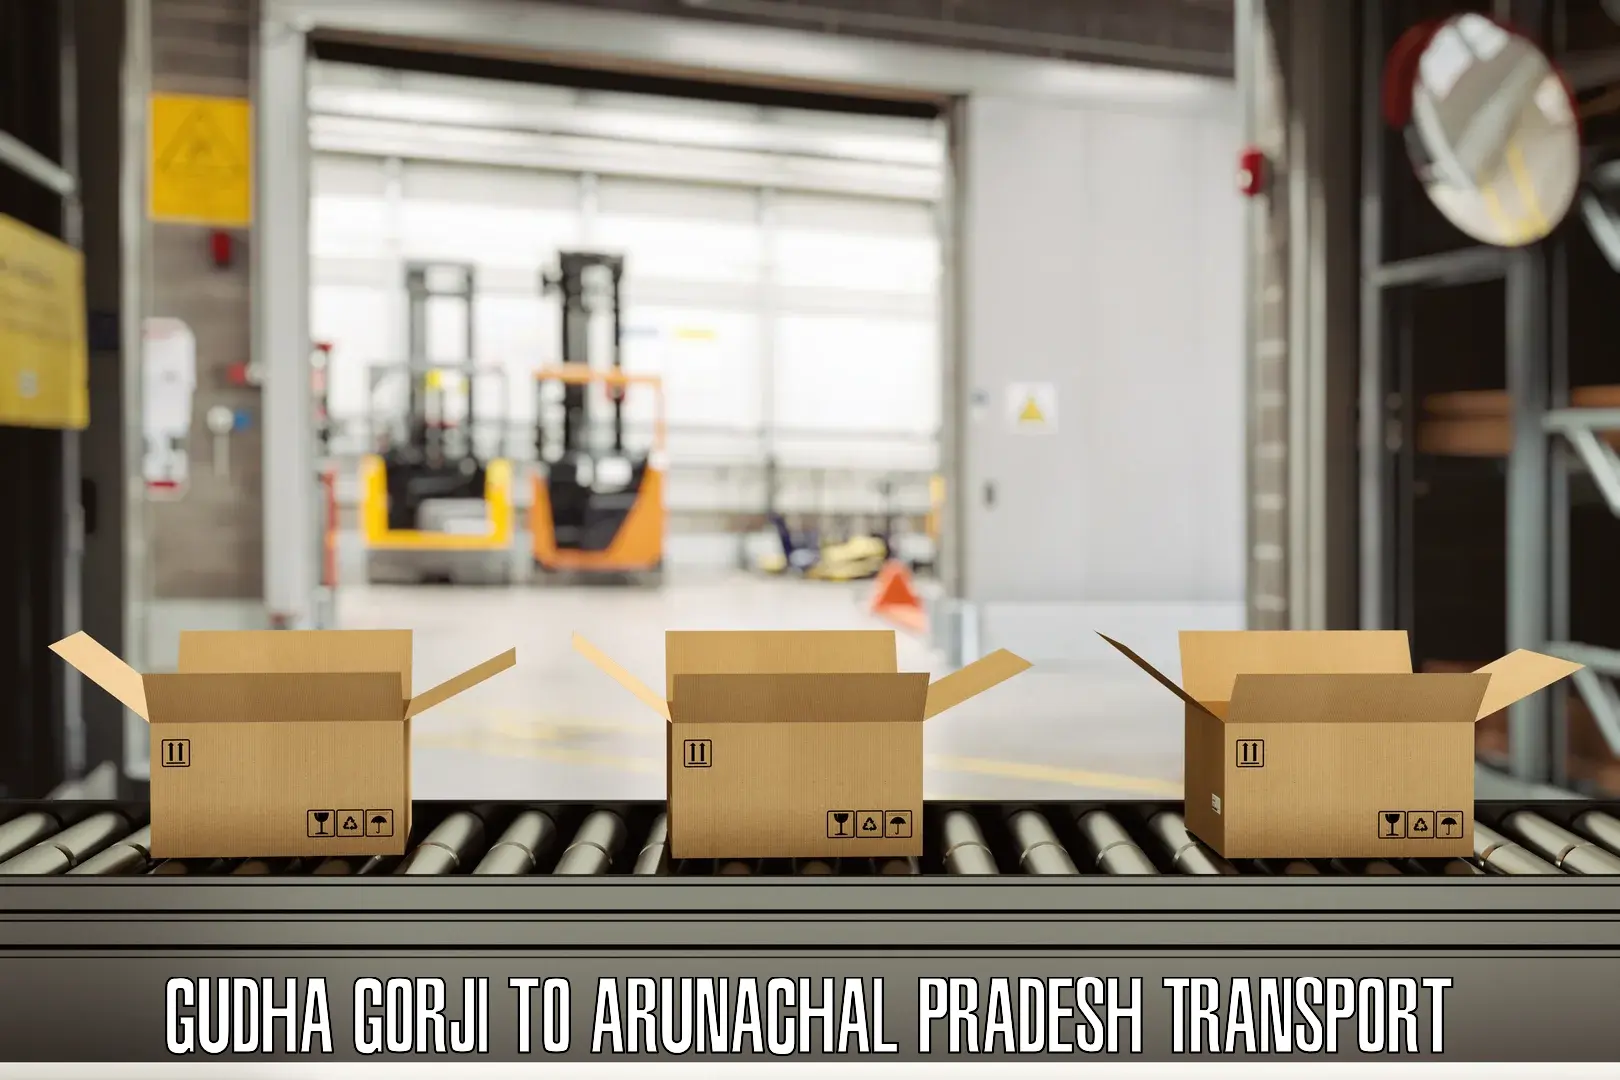 Express transport services Gudha Gorji to Arunachal Pradesh